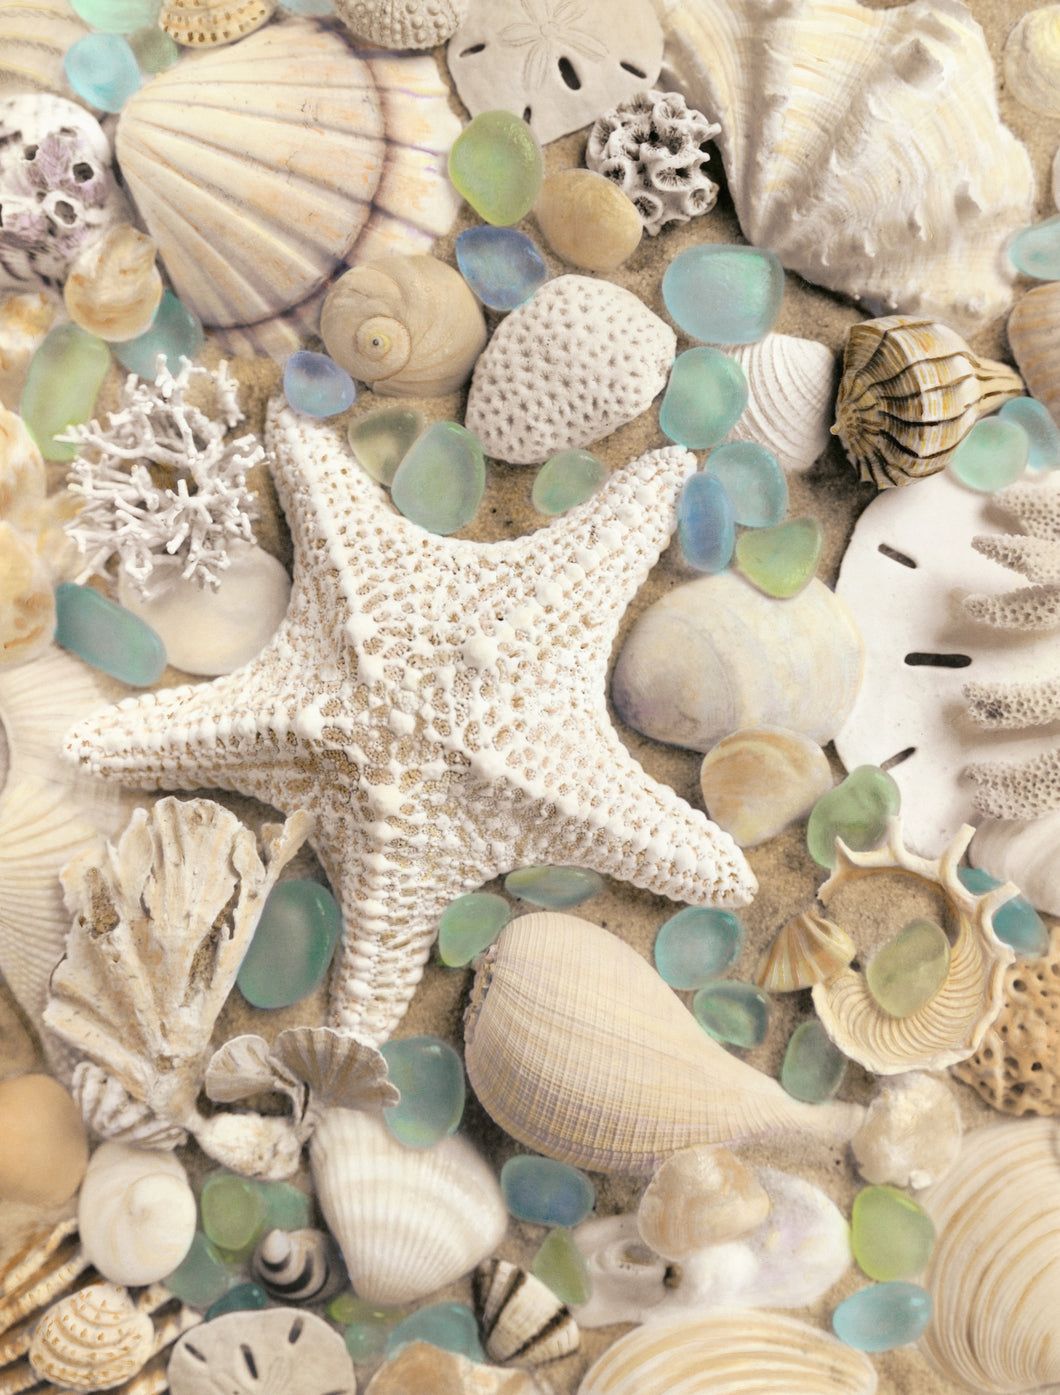 Bahama Starfish and Scallop Artwork